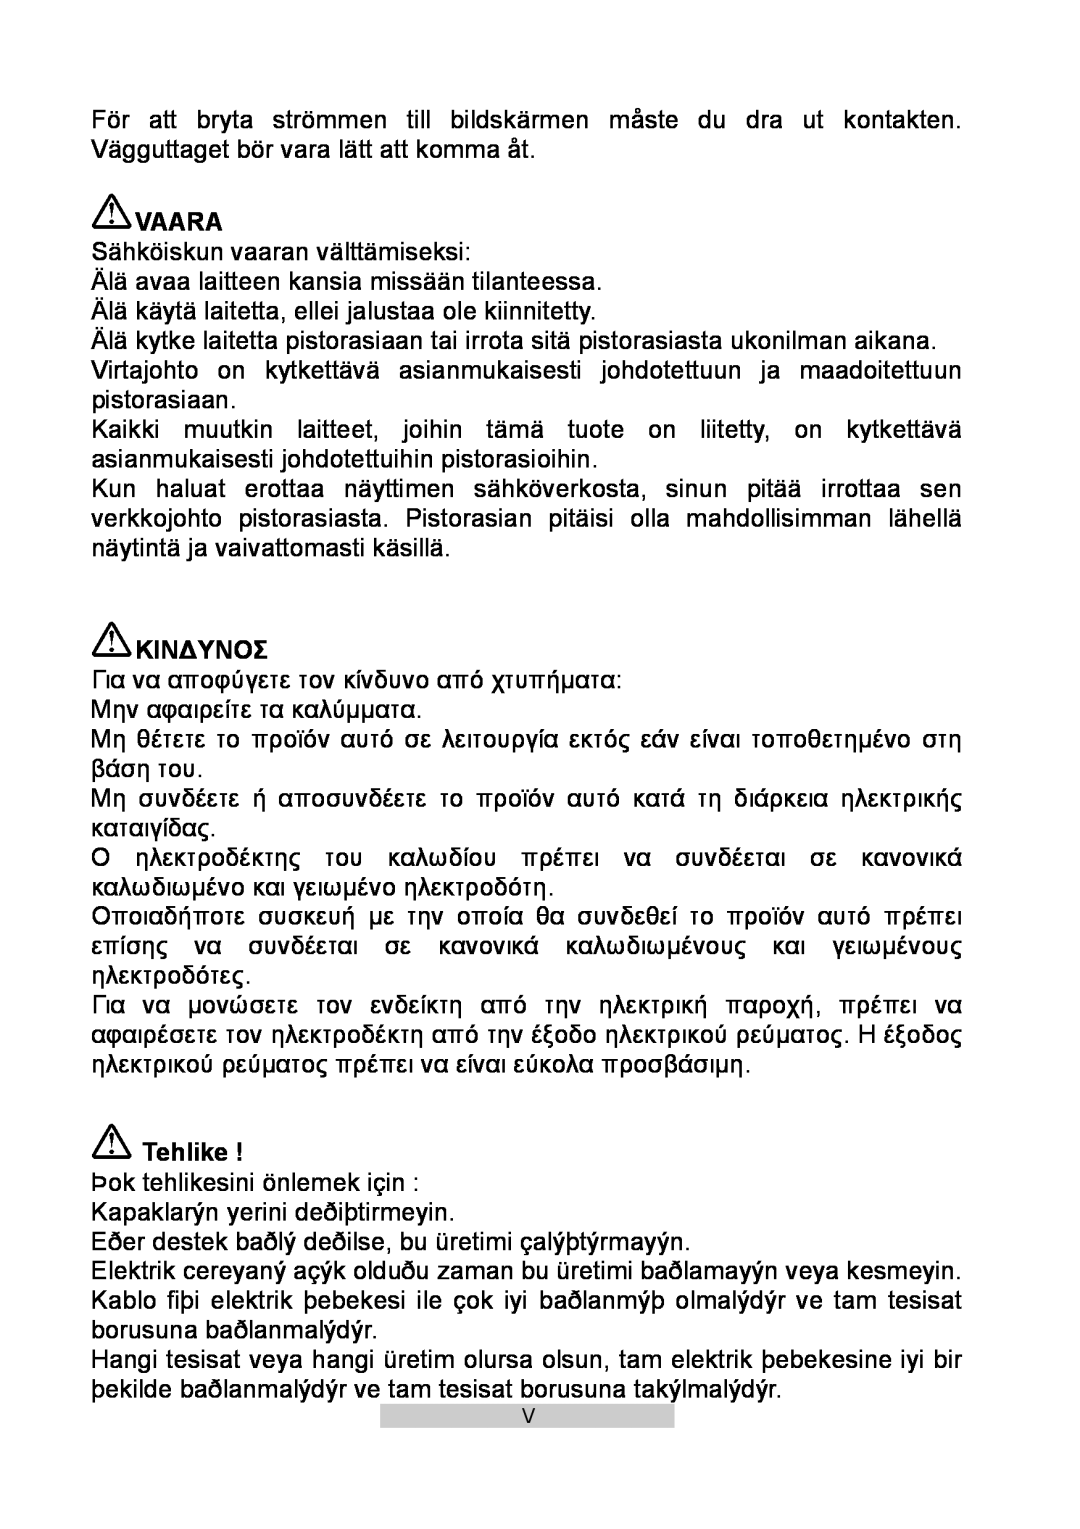 IBM T86A system manual Vaara, Κινδυνοσ, Tehlike 